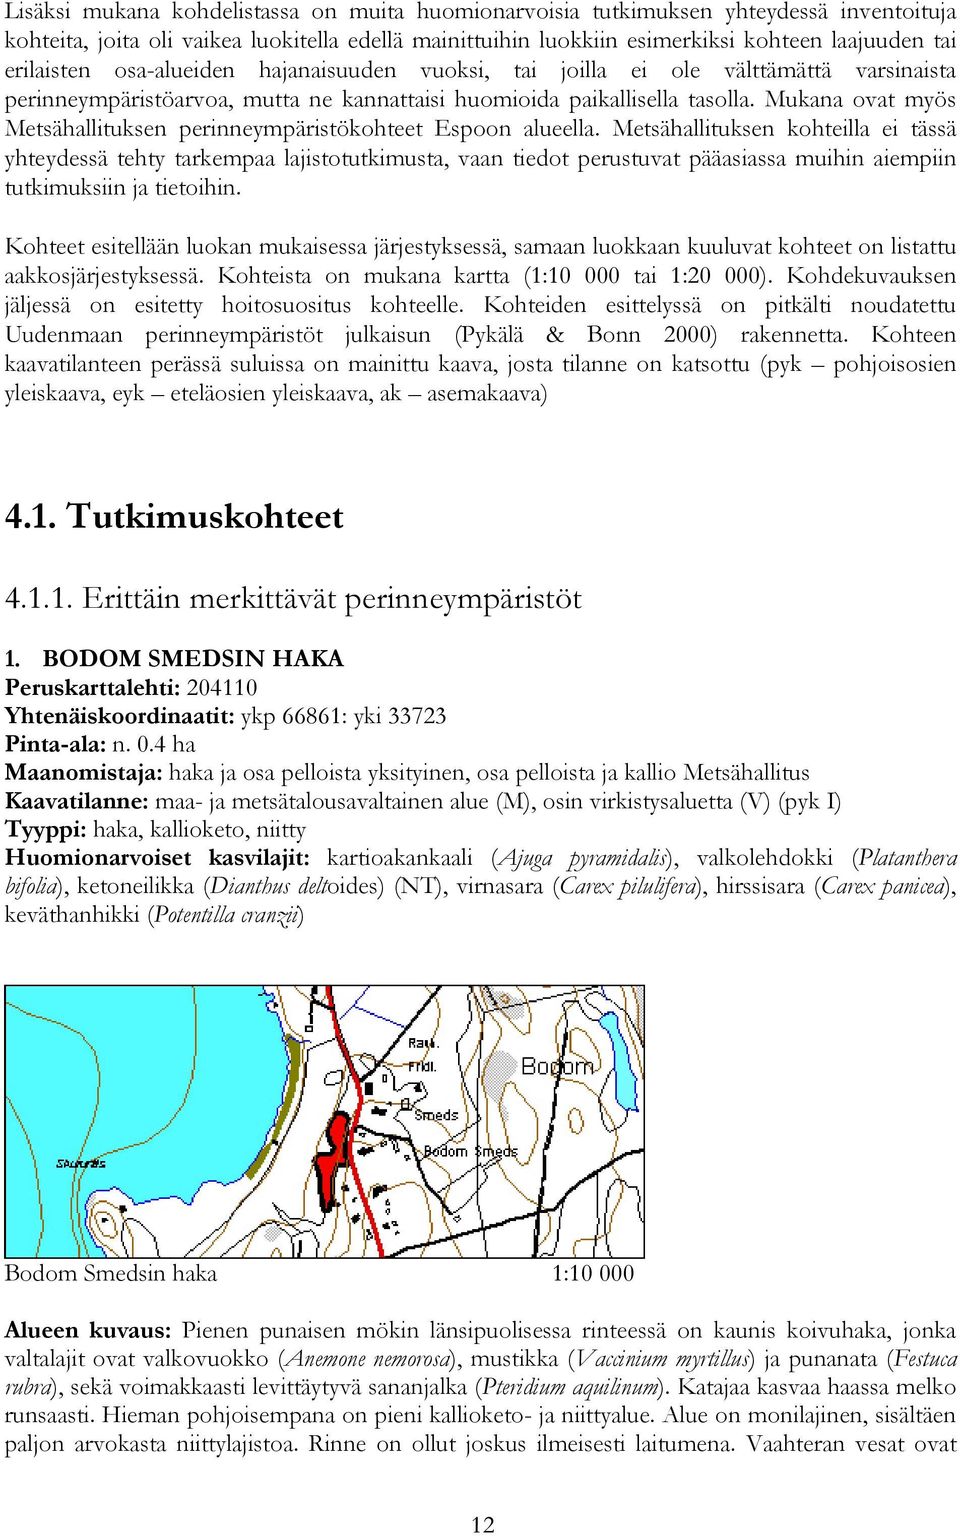 Mukana ovat myös Metsähallituksen perinneympäristökohteet Espoon alueella.